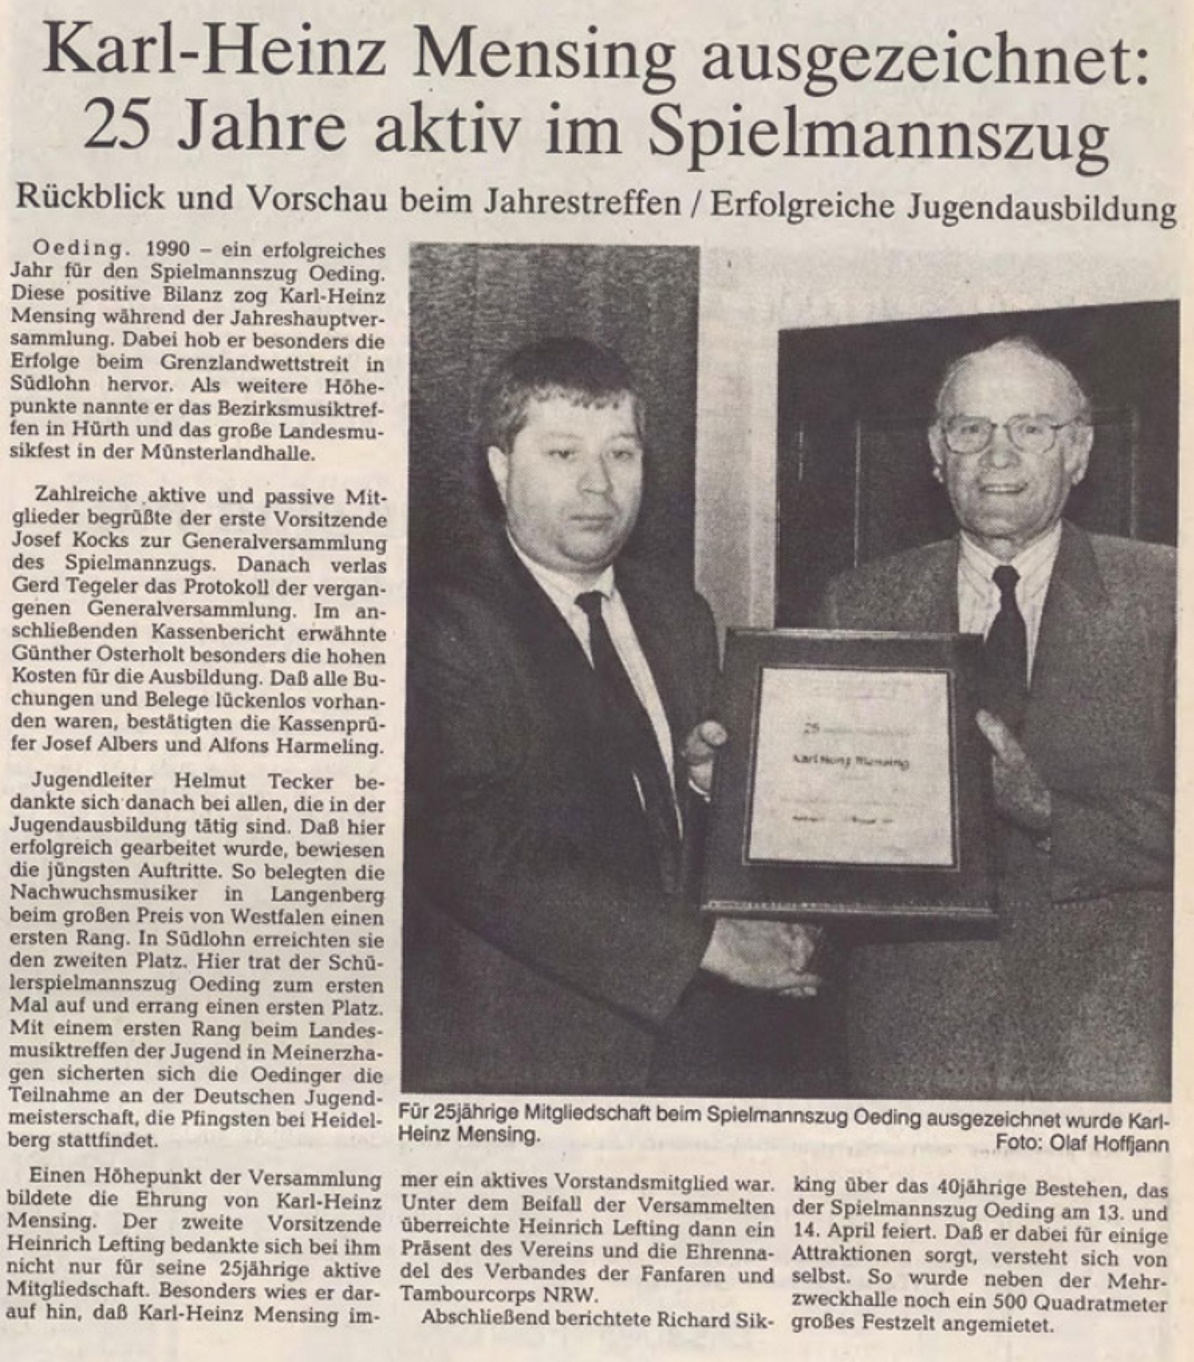 Karl-Heinz Mensing ausgezeichnet - 25 Jahre aktiv im Spielmannszug